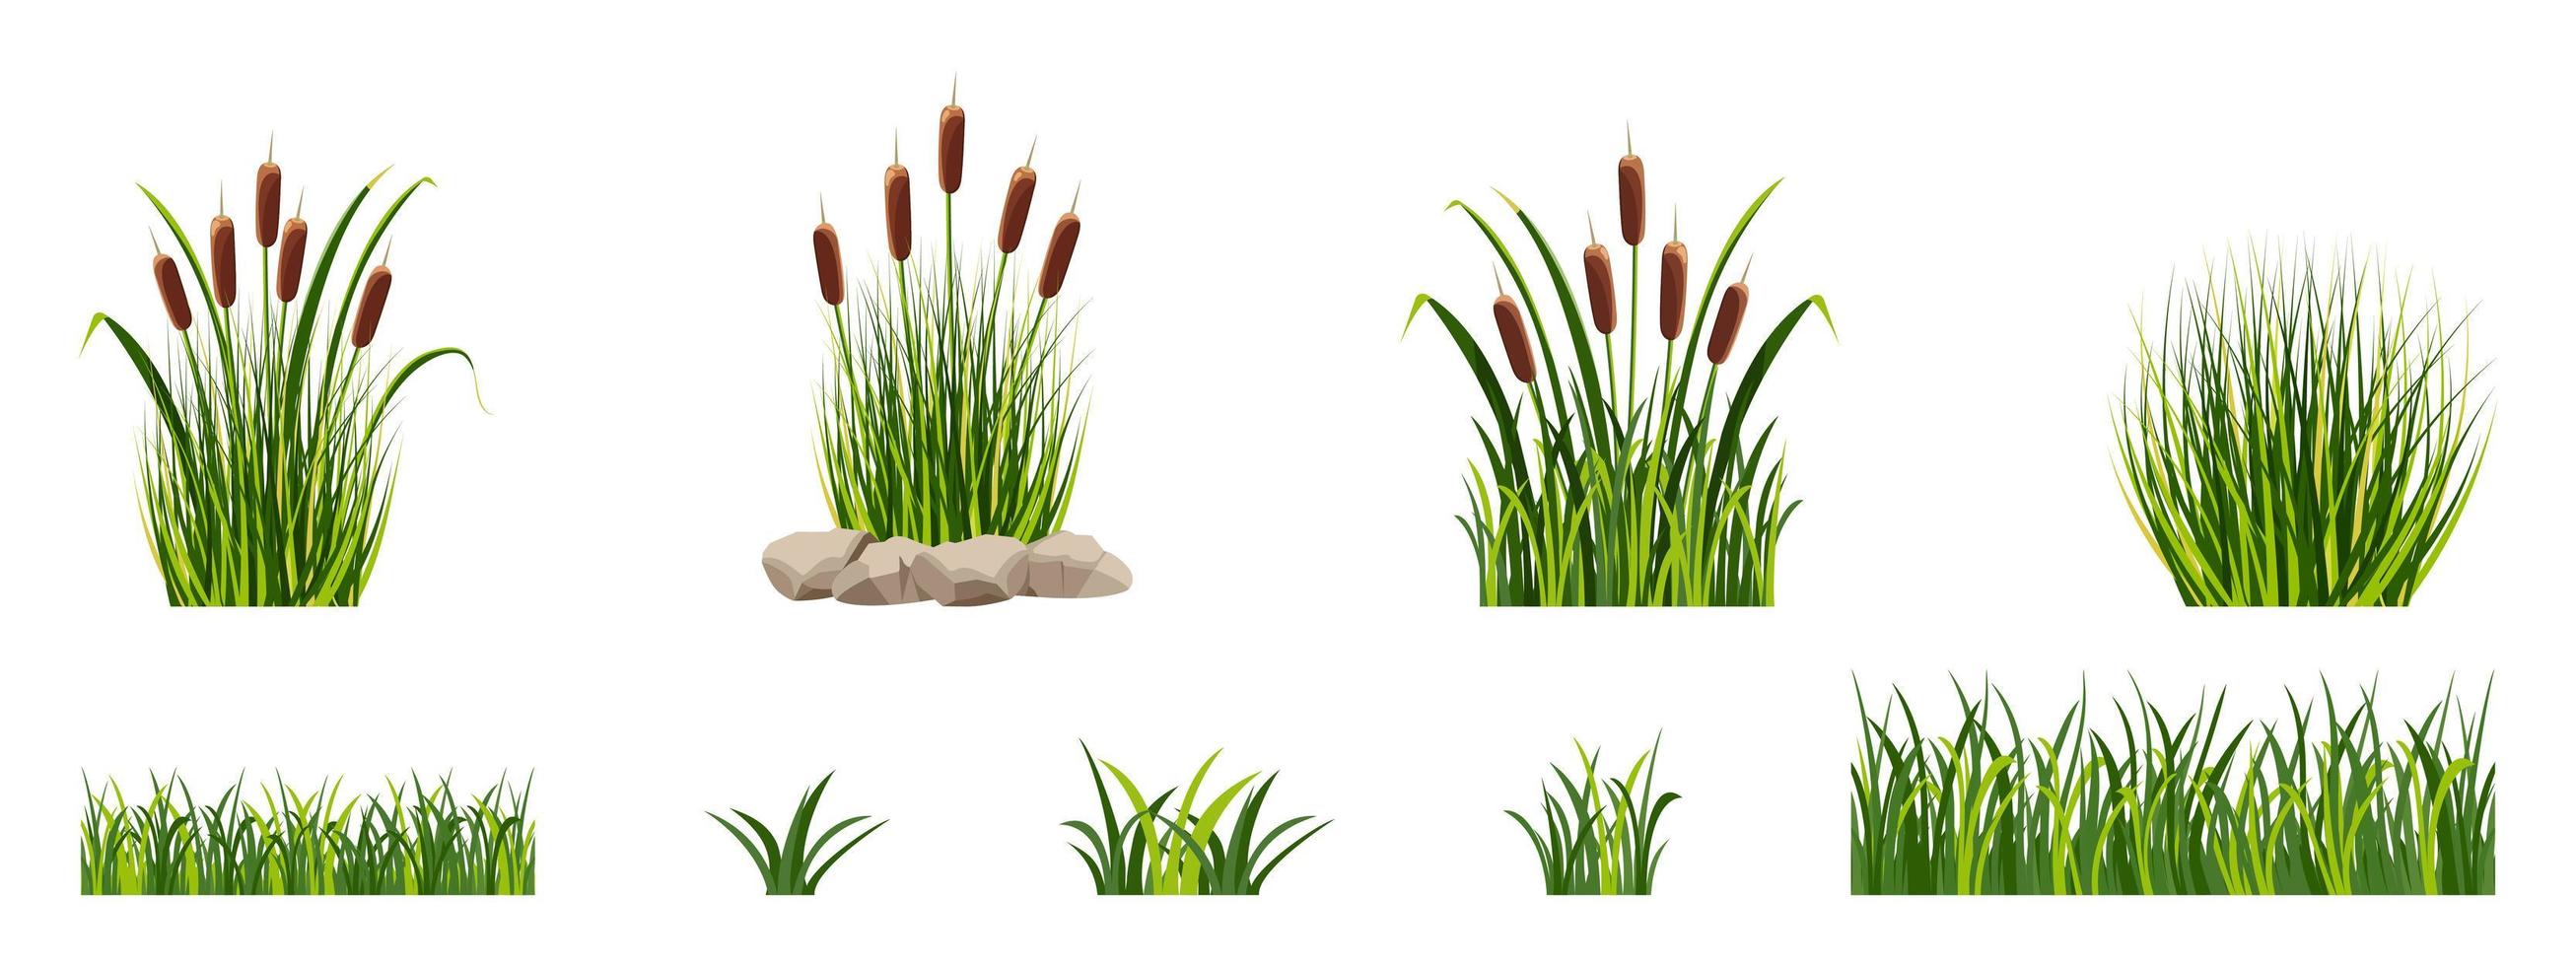 elementos de caña de pantano en la hierba. vegetación de estanques. vector